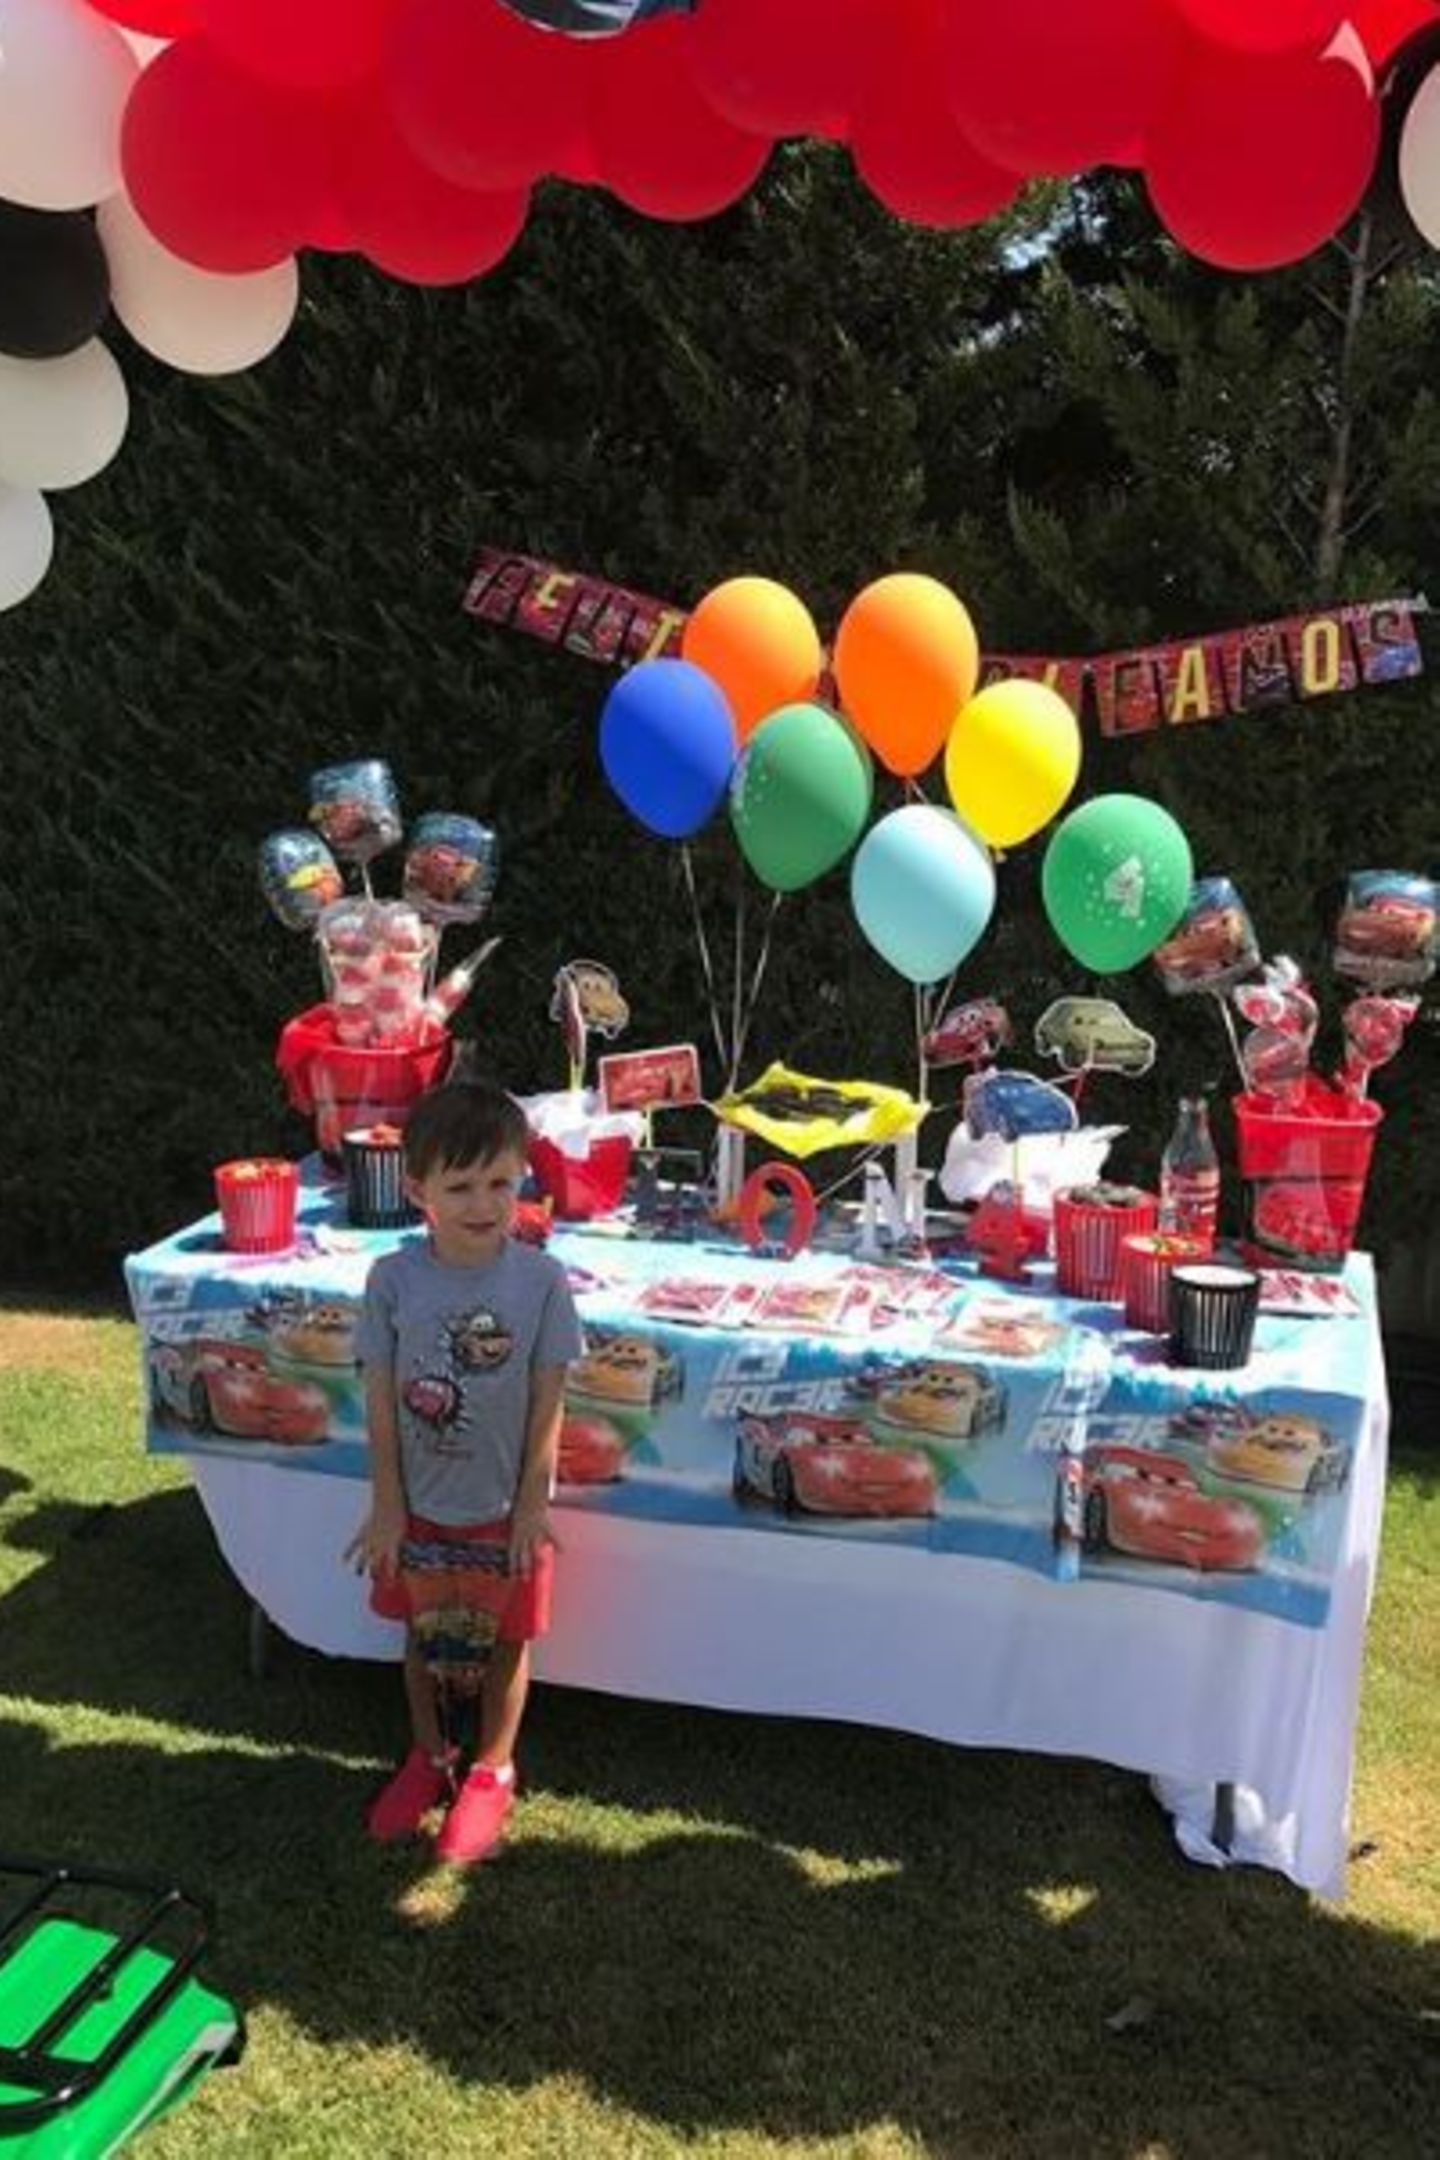 14. August 2017  "Wie die Zeit verfliegt", schreibt Toni Kroos zu diesem Foto seines Sohns Leon, der seinen vierten Geburtstag feiert. Das Motto der Party ist kaum zu übersehen: Alles ist mit den Rennautos aus "Cars" dekoriert.